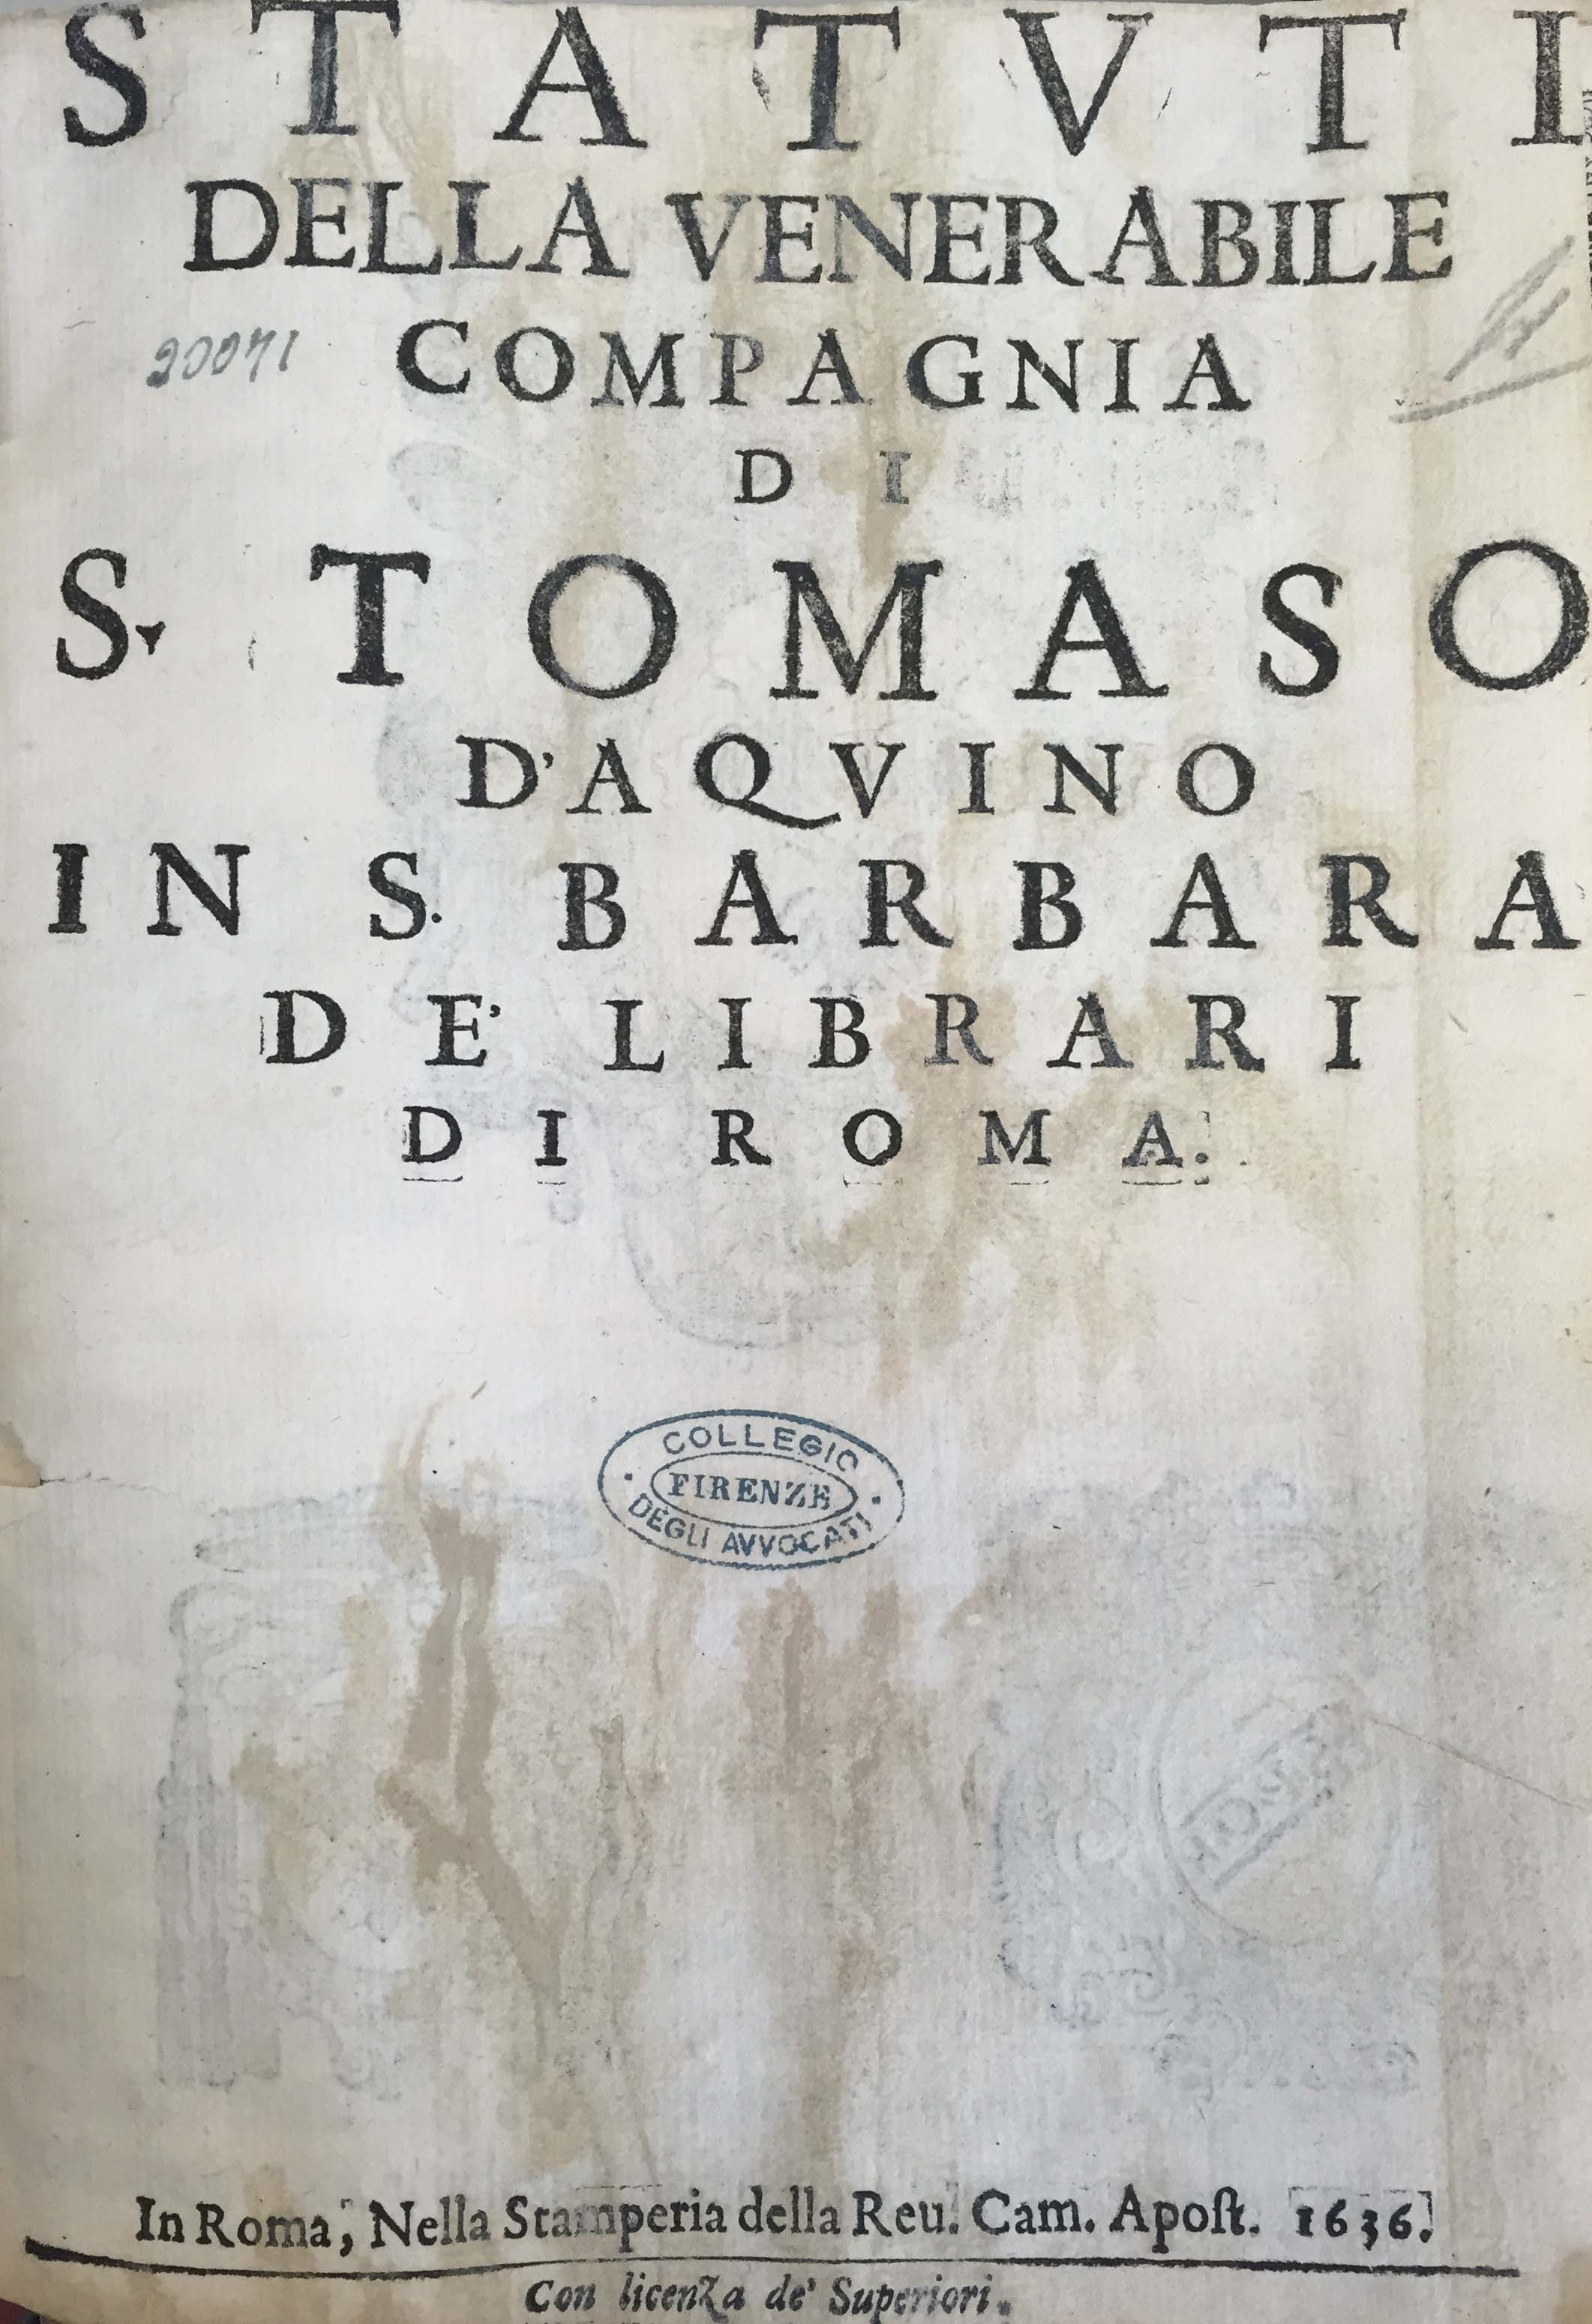 Statuti della venerabile compagnia di S. Tomaso d’Aquino in S. Barbara de’ librari di Roma